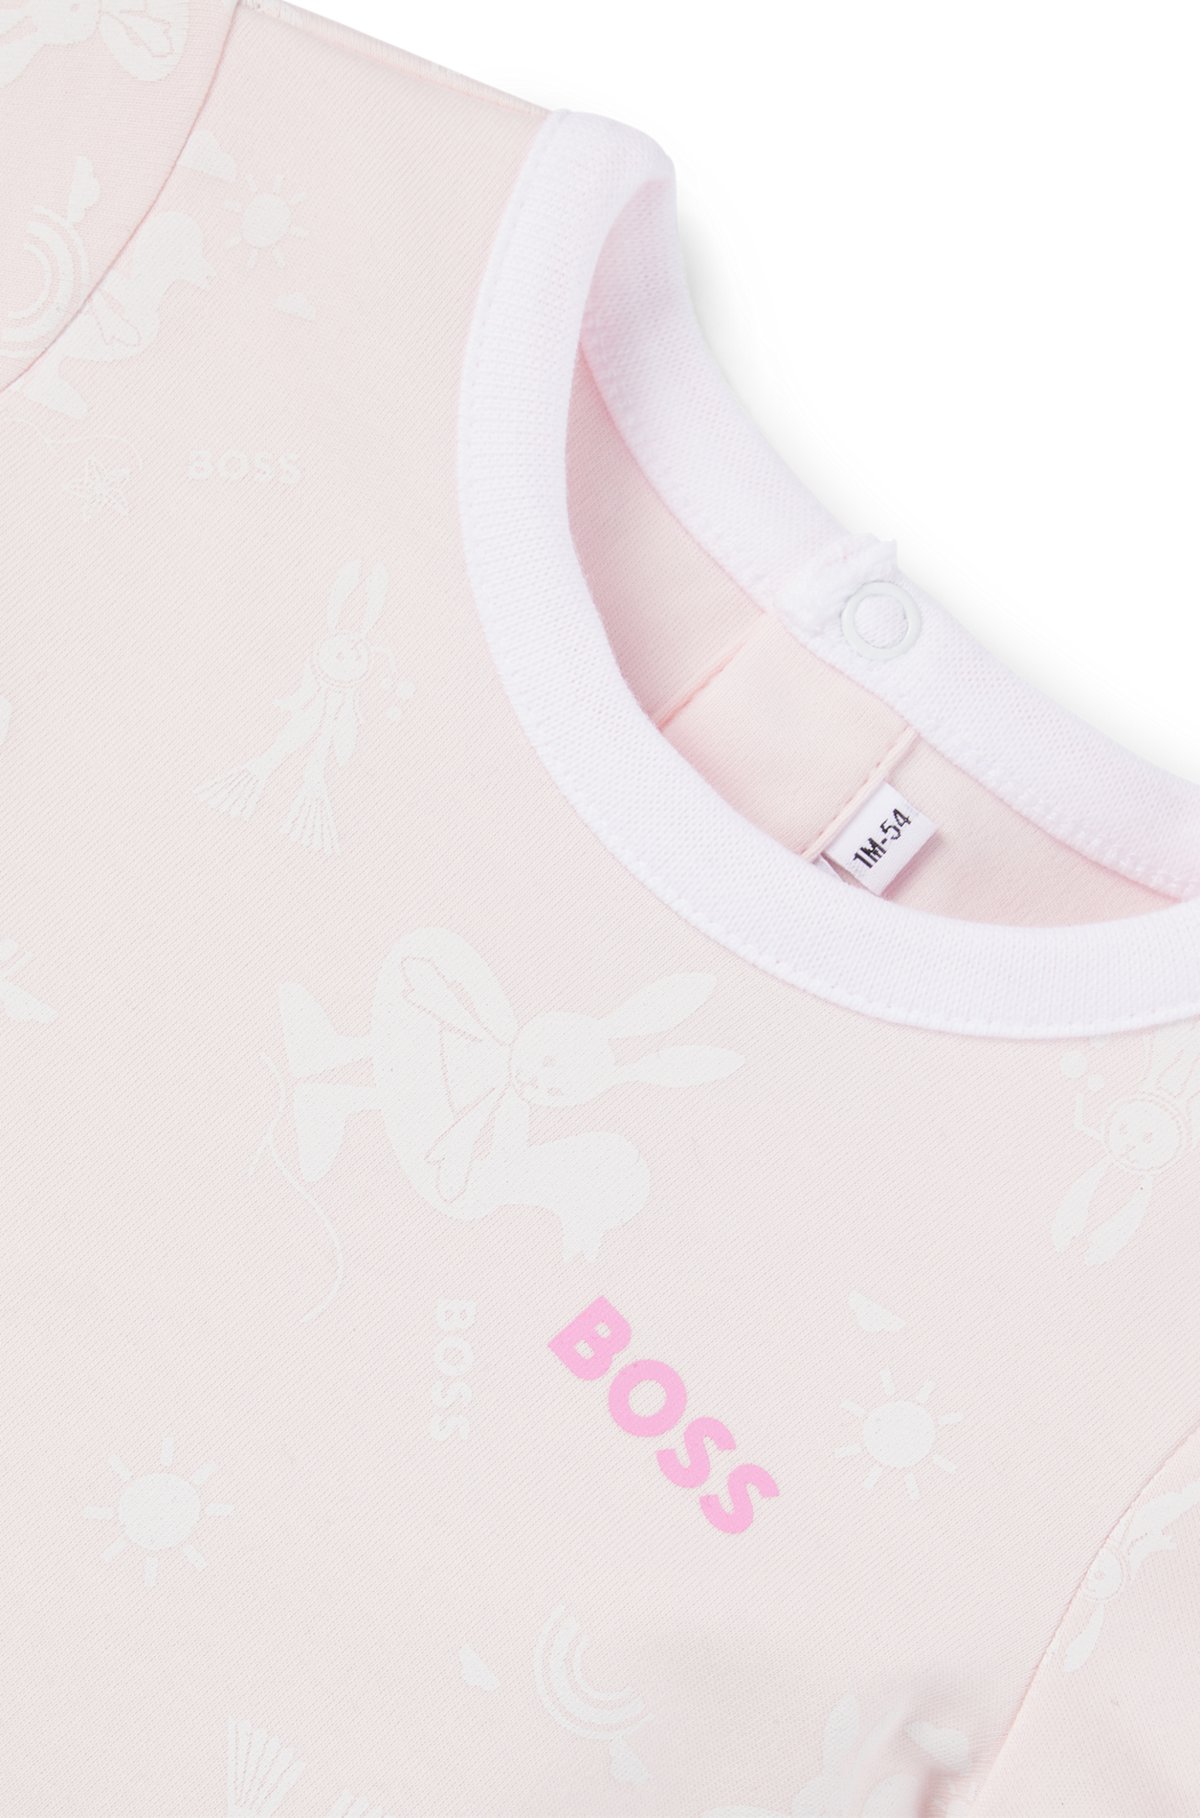 Pijama y gorro para bebés en caja de regalo, Rosa claro